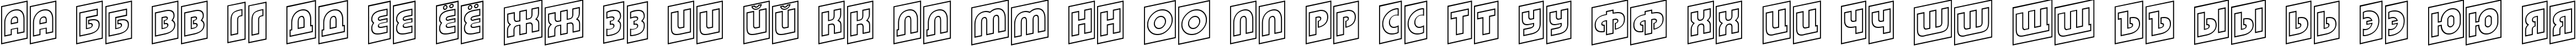 Пример написания русского алфавита шрифтом a_BighausTitulCmUpOtl